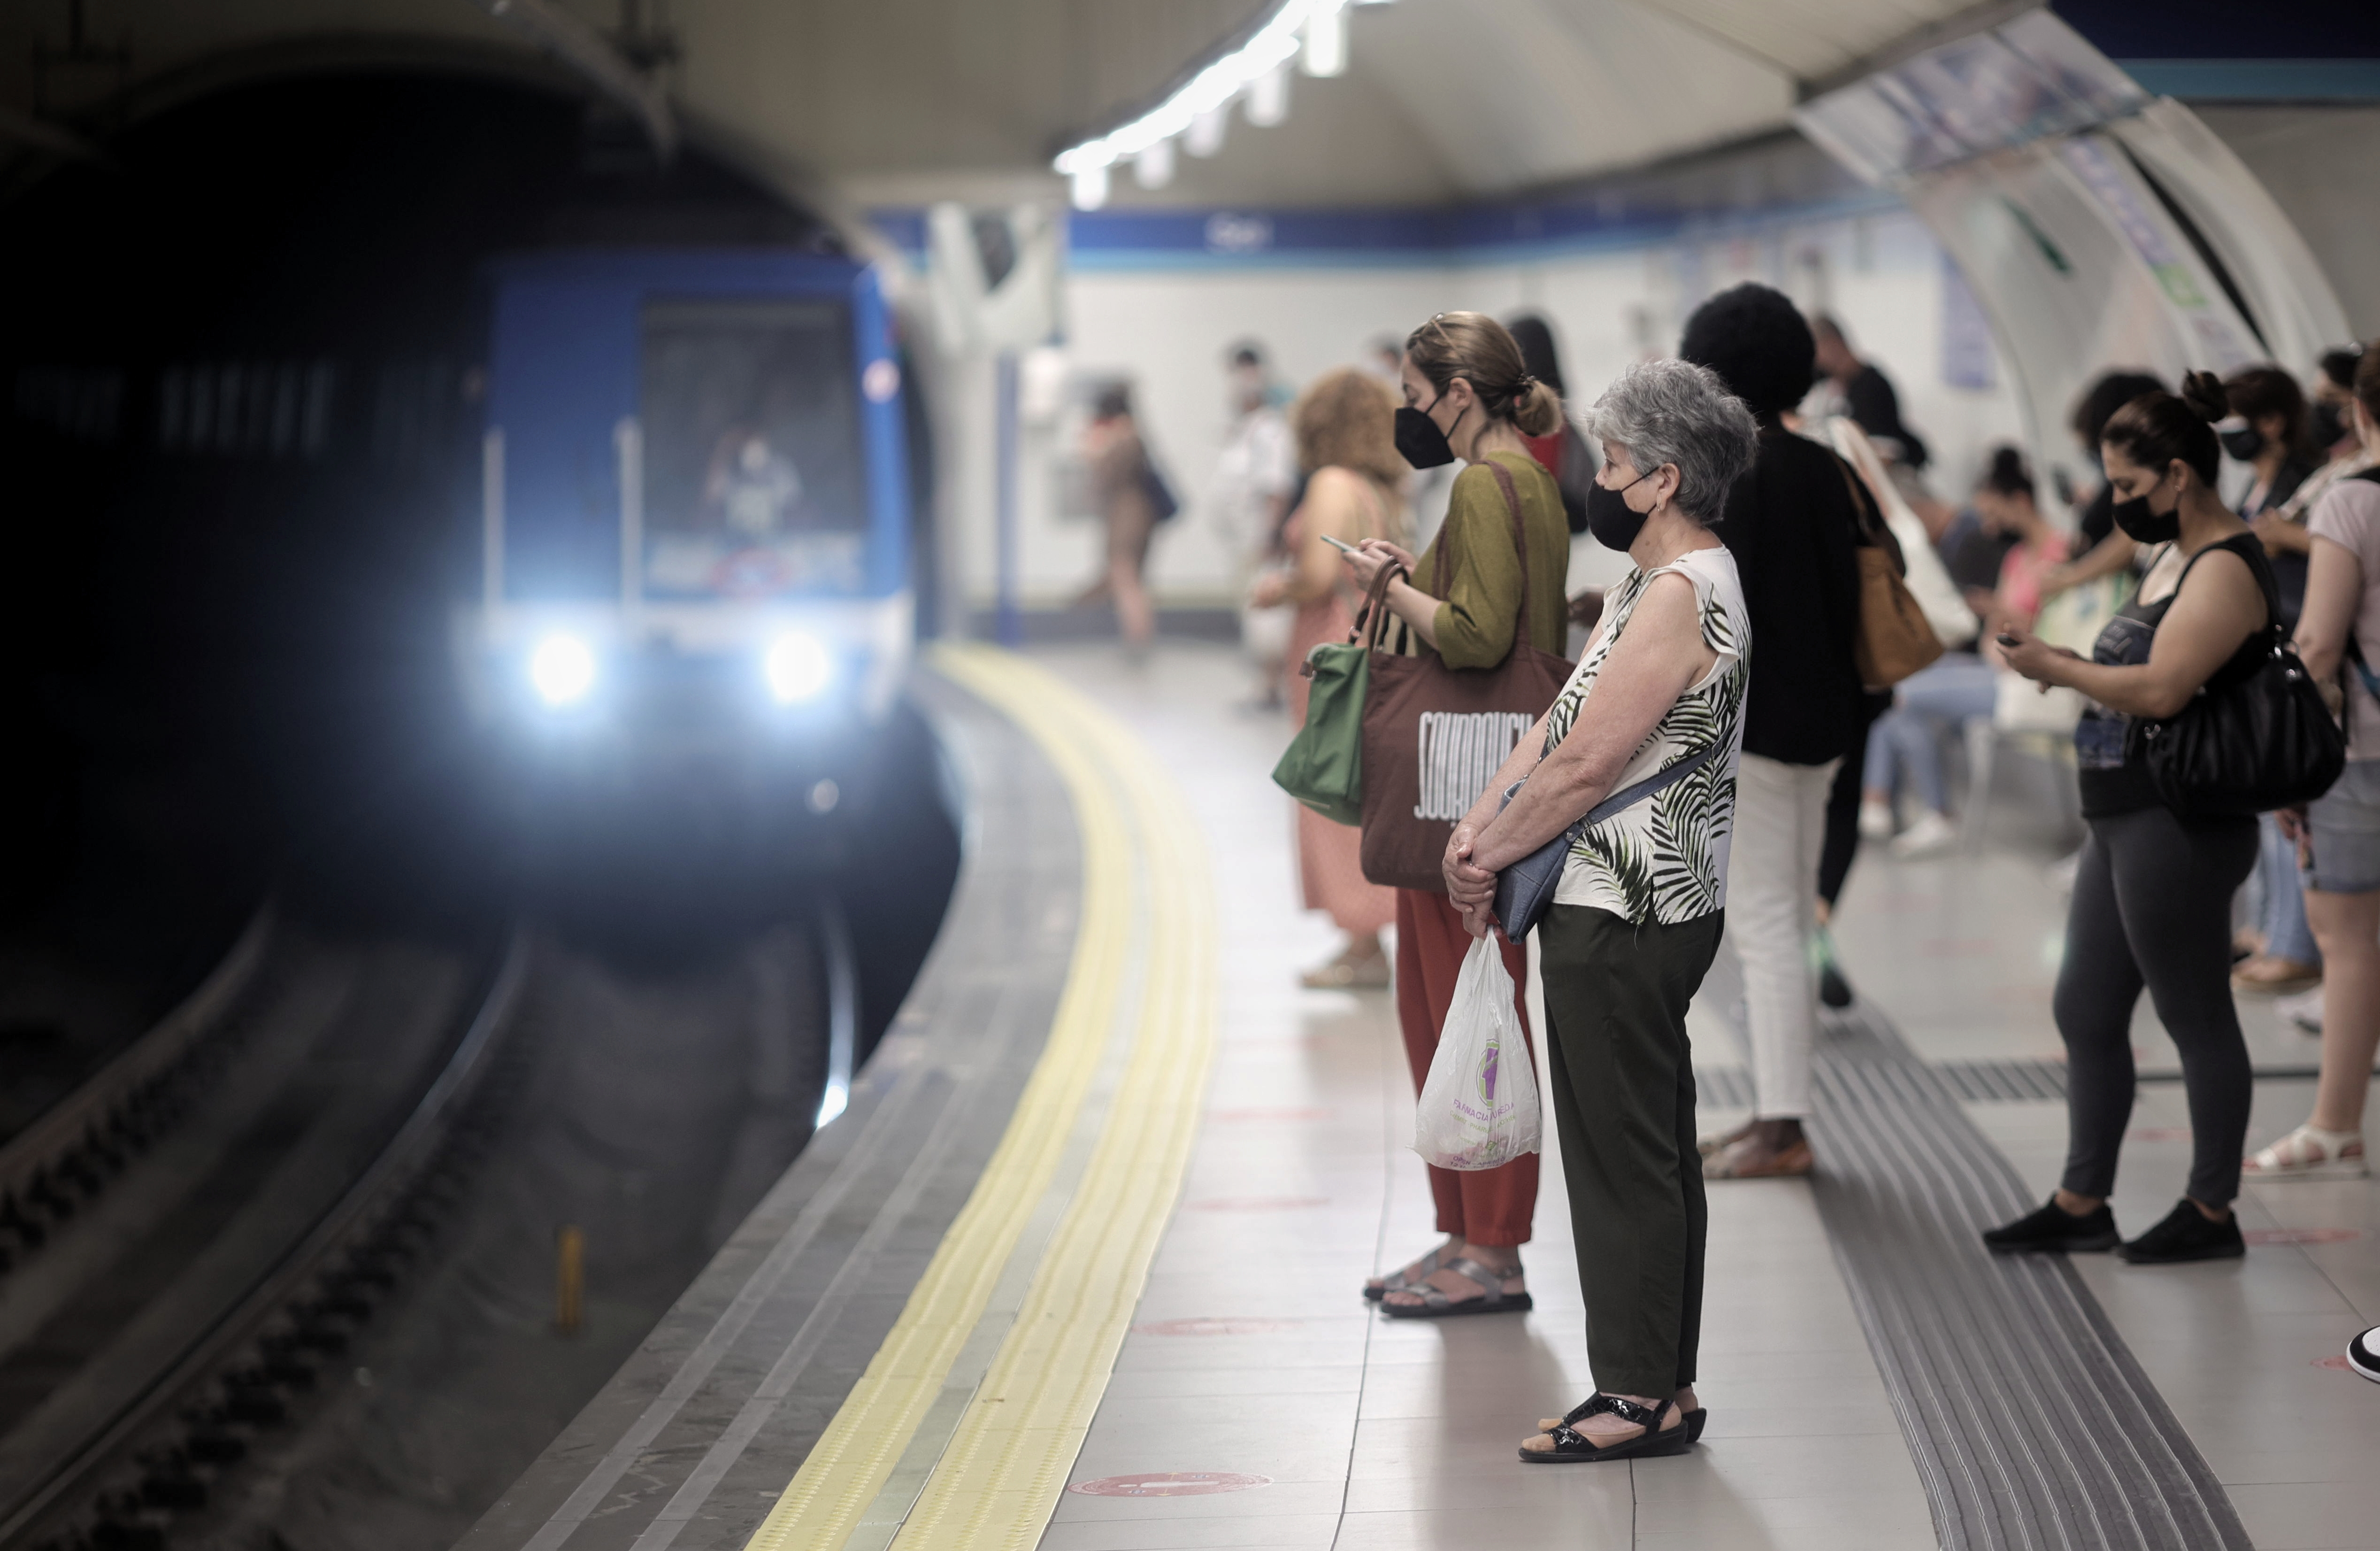 ผู้คนจำนวนมากบนชานชาลาของสถานีรถไฟใต้ดิน Sol เมื่อวันที่ 14 มิถุนายน 2021 ในกรุงมาดริด ประเทศสเปน  CCOO, UGT และ USO เรียกร้องให้มีการนัดหยุดงานสำหรับคนงานเจ็ดคนที่เสียชีวิตจากการจัดการหรือการสัมผัสแร่ใยหินระหว่างชีวิตการทำงานในเขตชานเมืองและสำหรับ 12 คนที่ได้รับการยอมรับว่าเป็นโรคจากการทำงาน  อย่างไรก็ตาม การนัดหยุดงานถูกยกเลิก สิ่งที่ทำคือการชุมนุมจำนวนมากนอกสถานีรถไฟใต้ดิน  14 มิถุนายน 2564;  รถไฟใต้ดิน;  โรค;  สุขภาพ;  DEATH Eduardo Parra / Europa Press (ภาพถ่าย) 14.06.2021